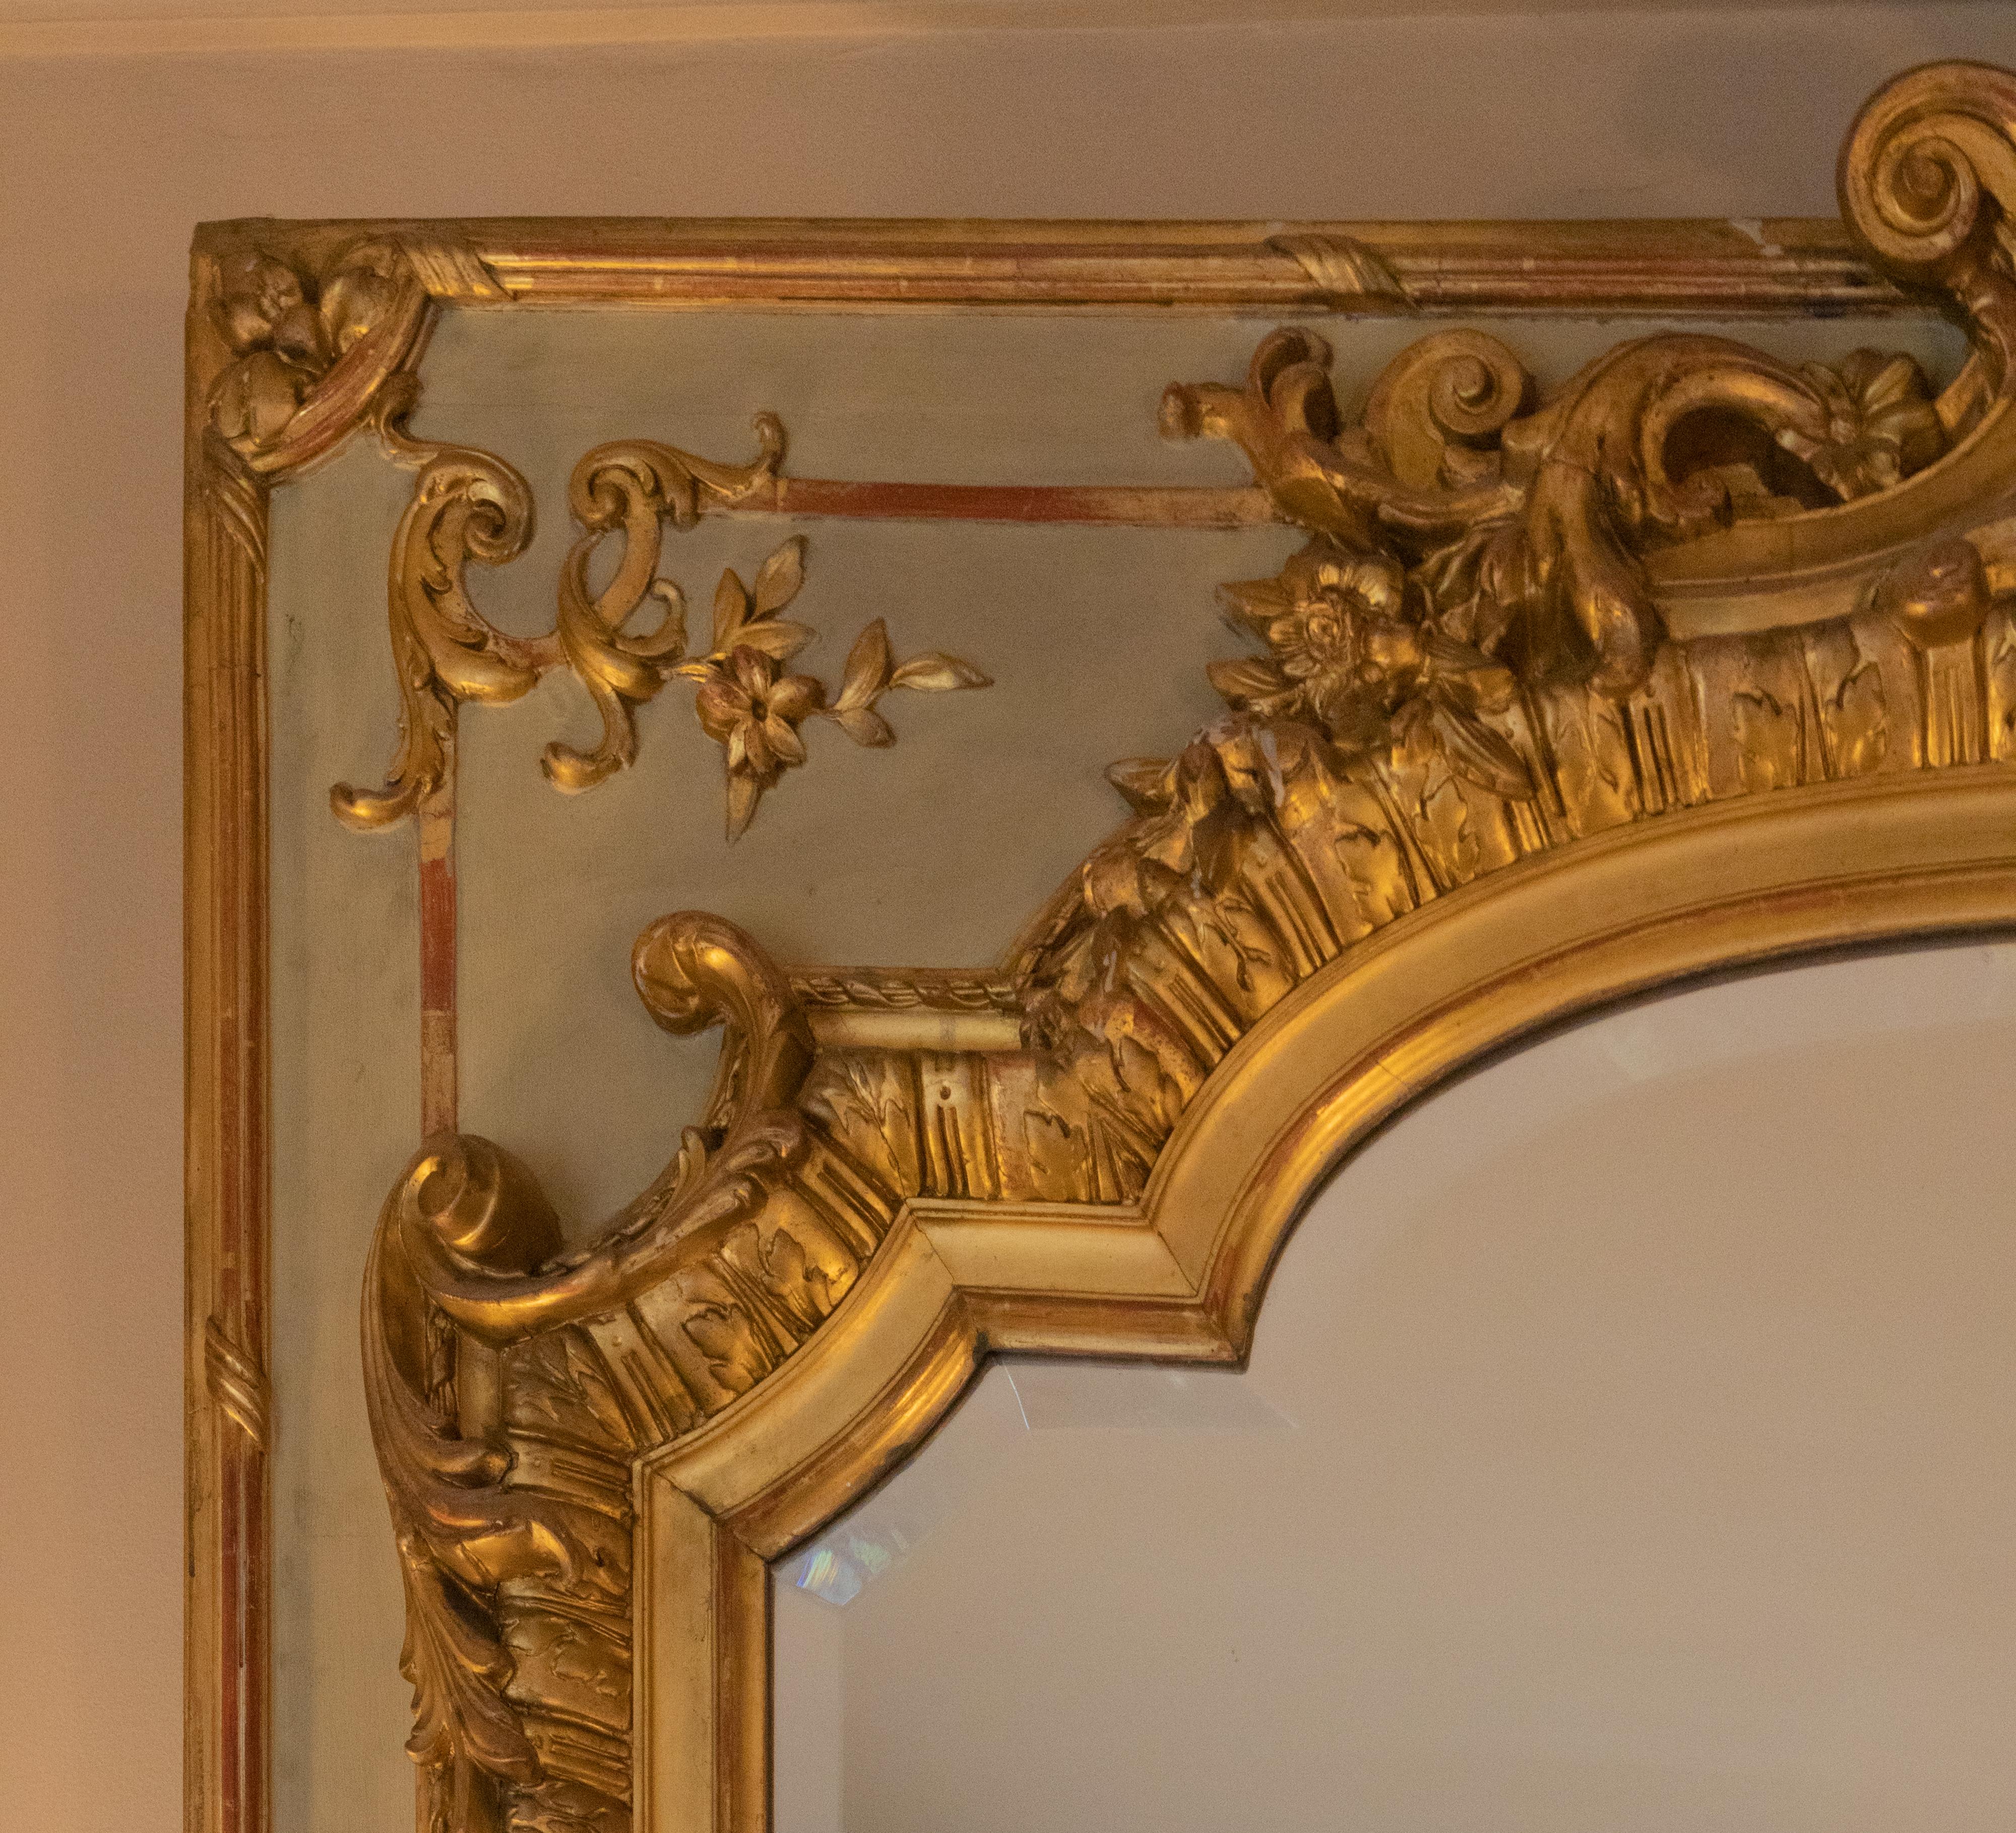 Un beau miroir Tremeau du 19ème siècle peint et avec une parcellisation dorée, miroir rectangulaire dans un cadre rectangulaire gris verdâtre et décor de stuc à la feuille d'or, motifs rococo et reliefs tels que des feuilles d'acanthe enroulées, des